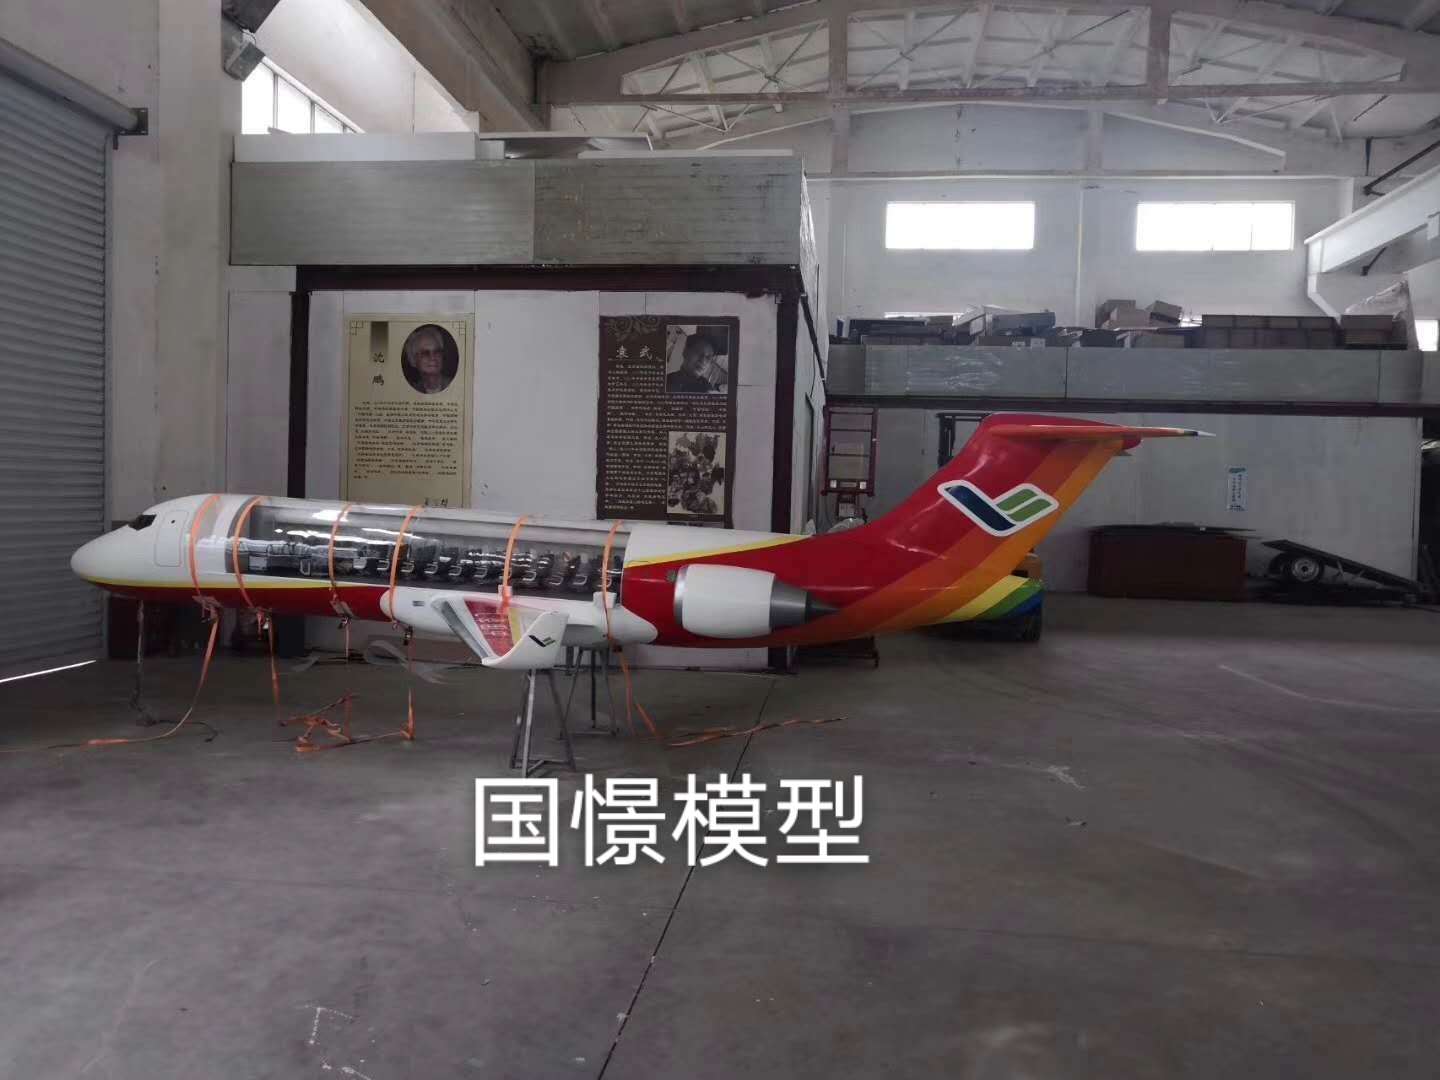 平山县飞机模型